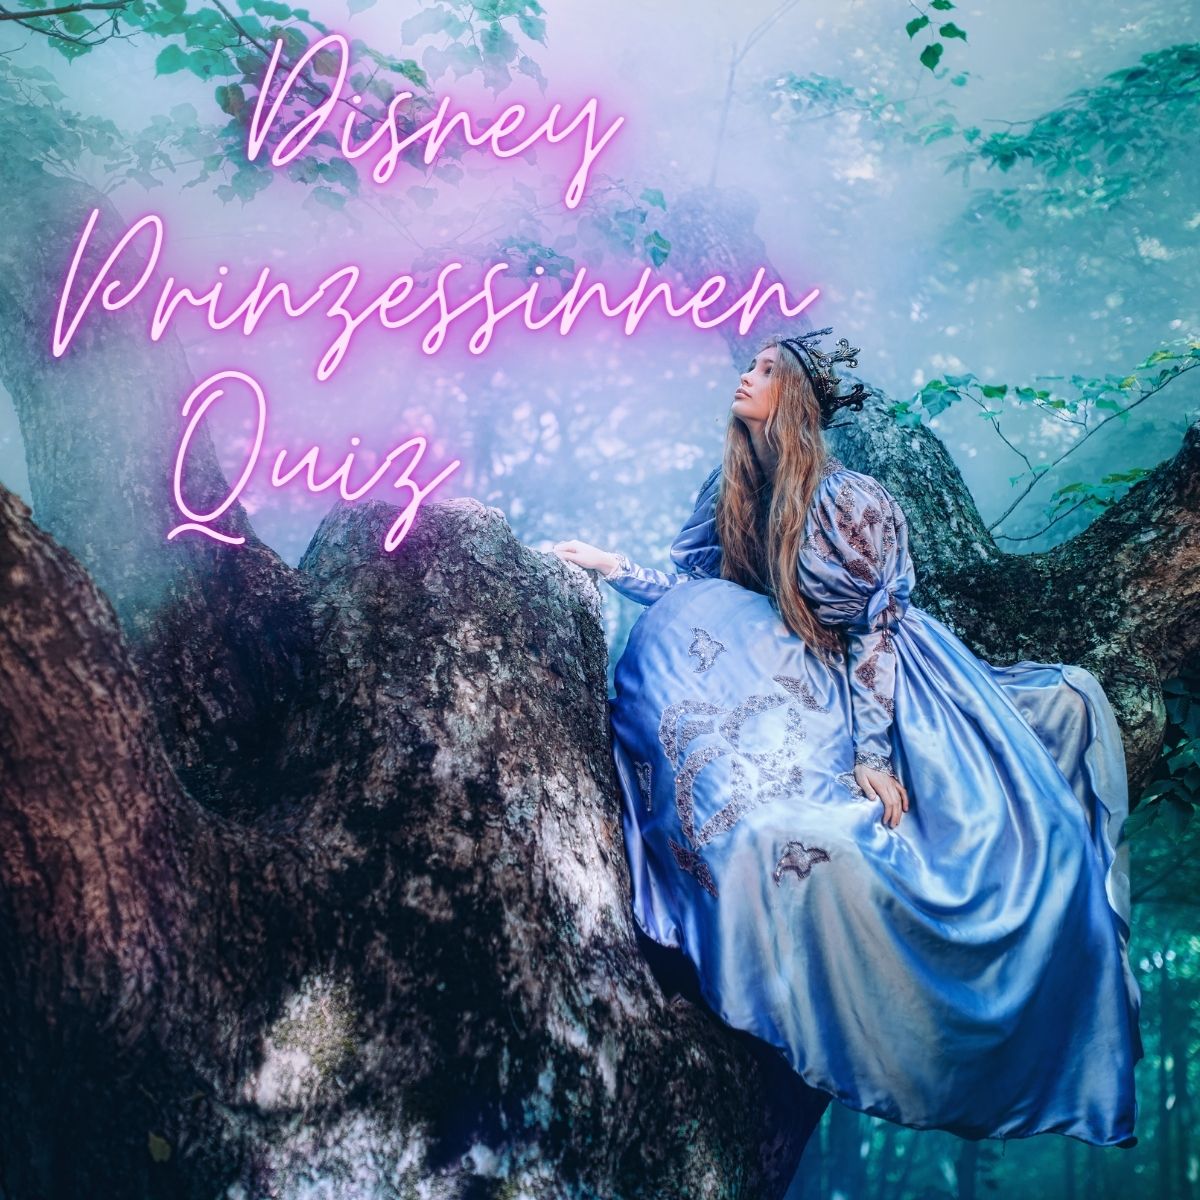 Märchenhafter Baum auf dem eine Prinzessin in einem blauen Kleid sitz und in den Himmel starrt.